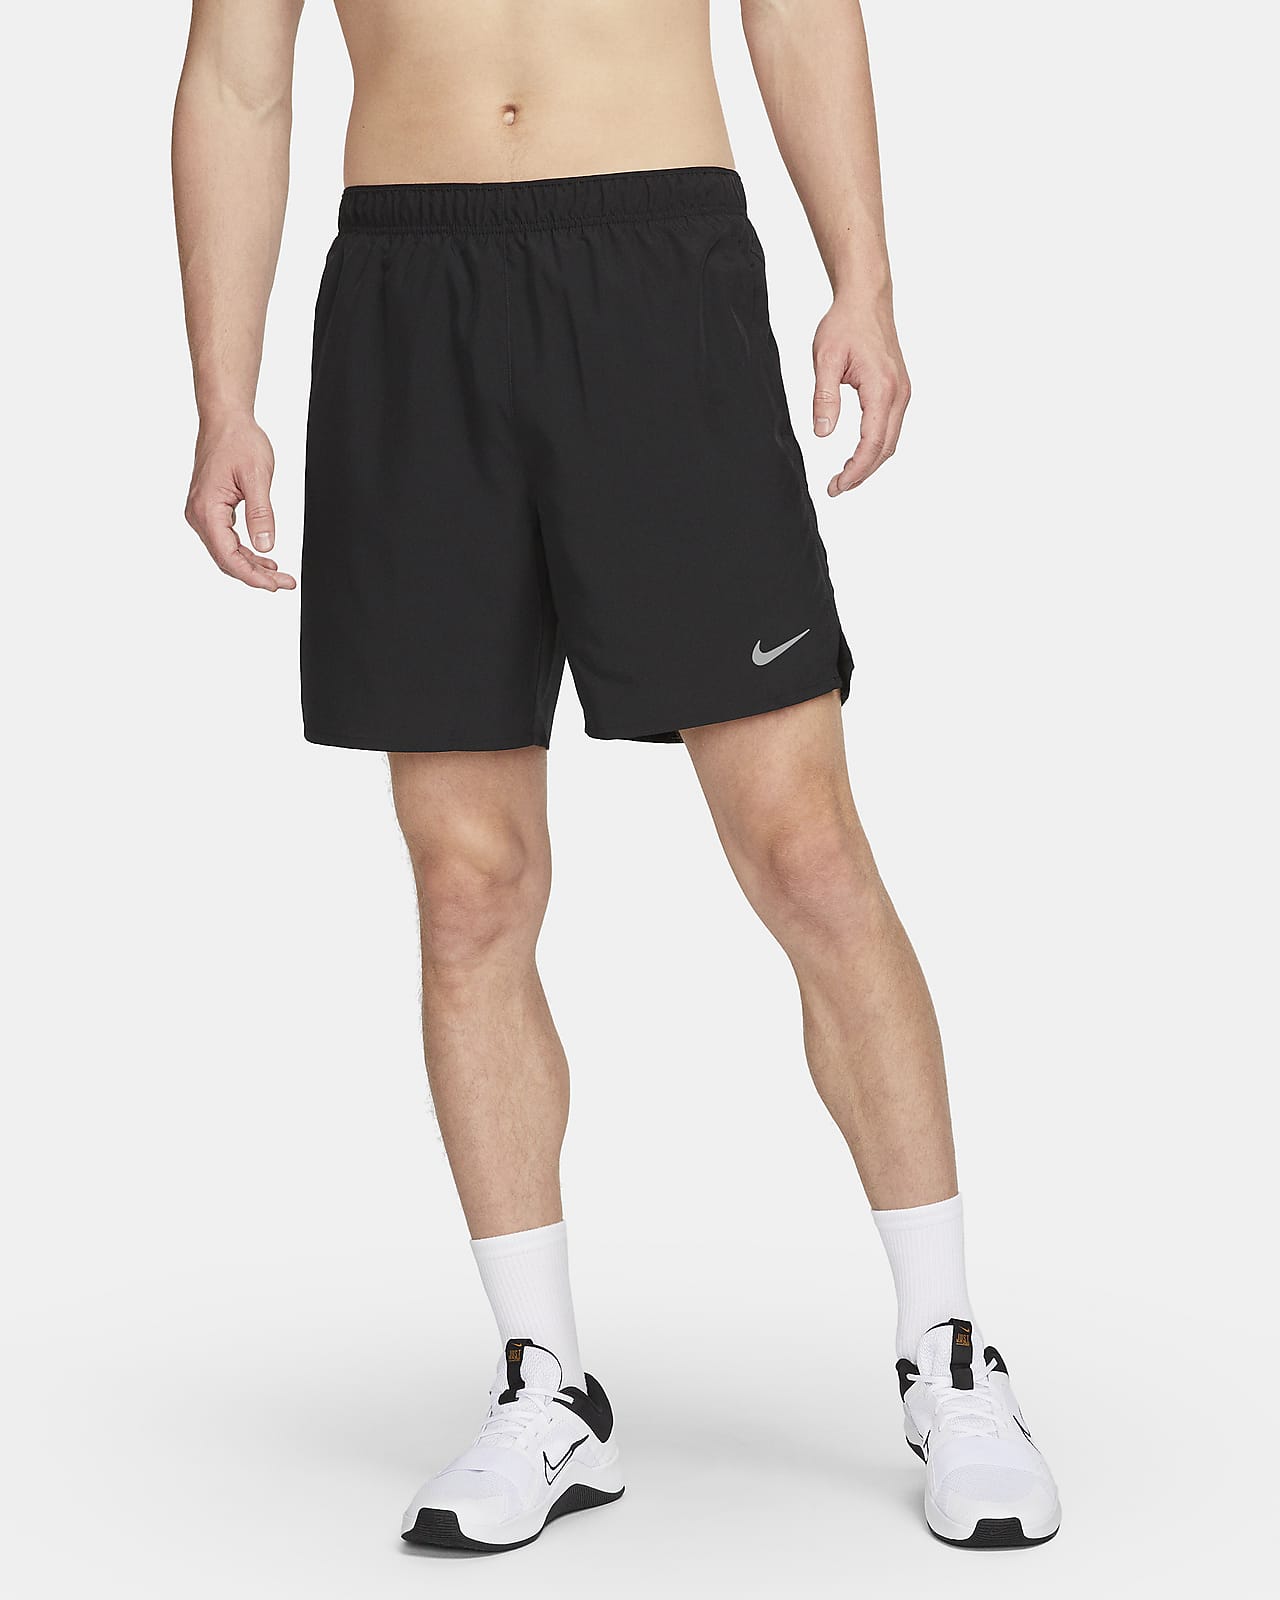 Short de running avec sous-short intégré 18 cm Dri-FIT Nike Challenger pour homme